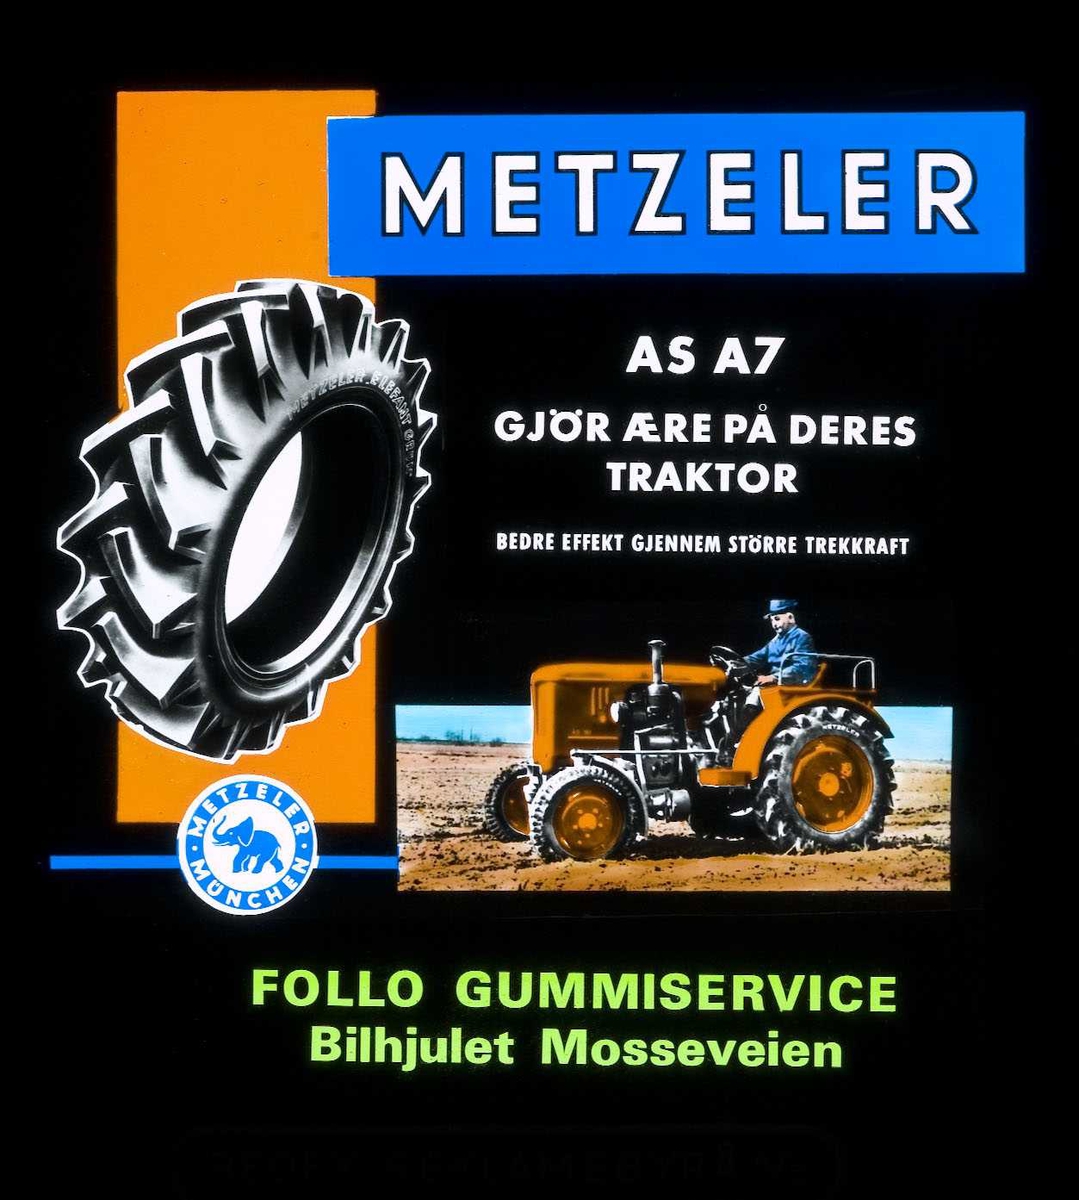 Kinoreklame fra Ski for dekk. Metzeler AS AA/ gjør ære på Deres traktor. Follo gummiservice Bilhjulet Mosseveien.